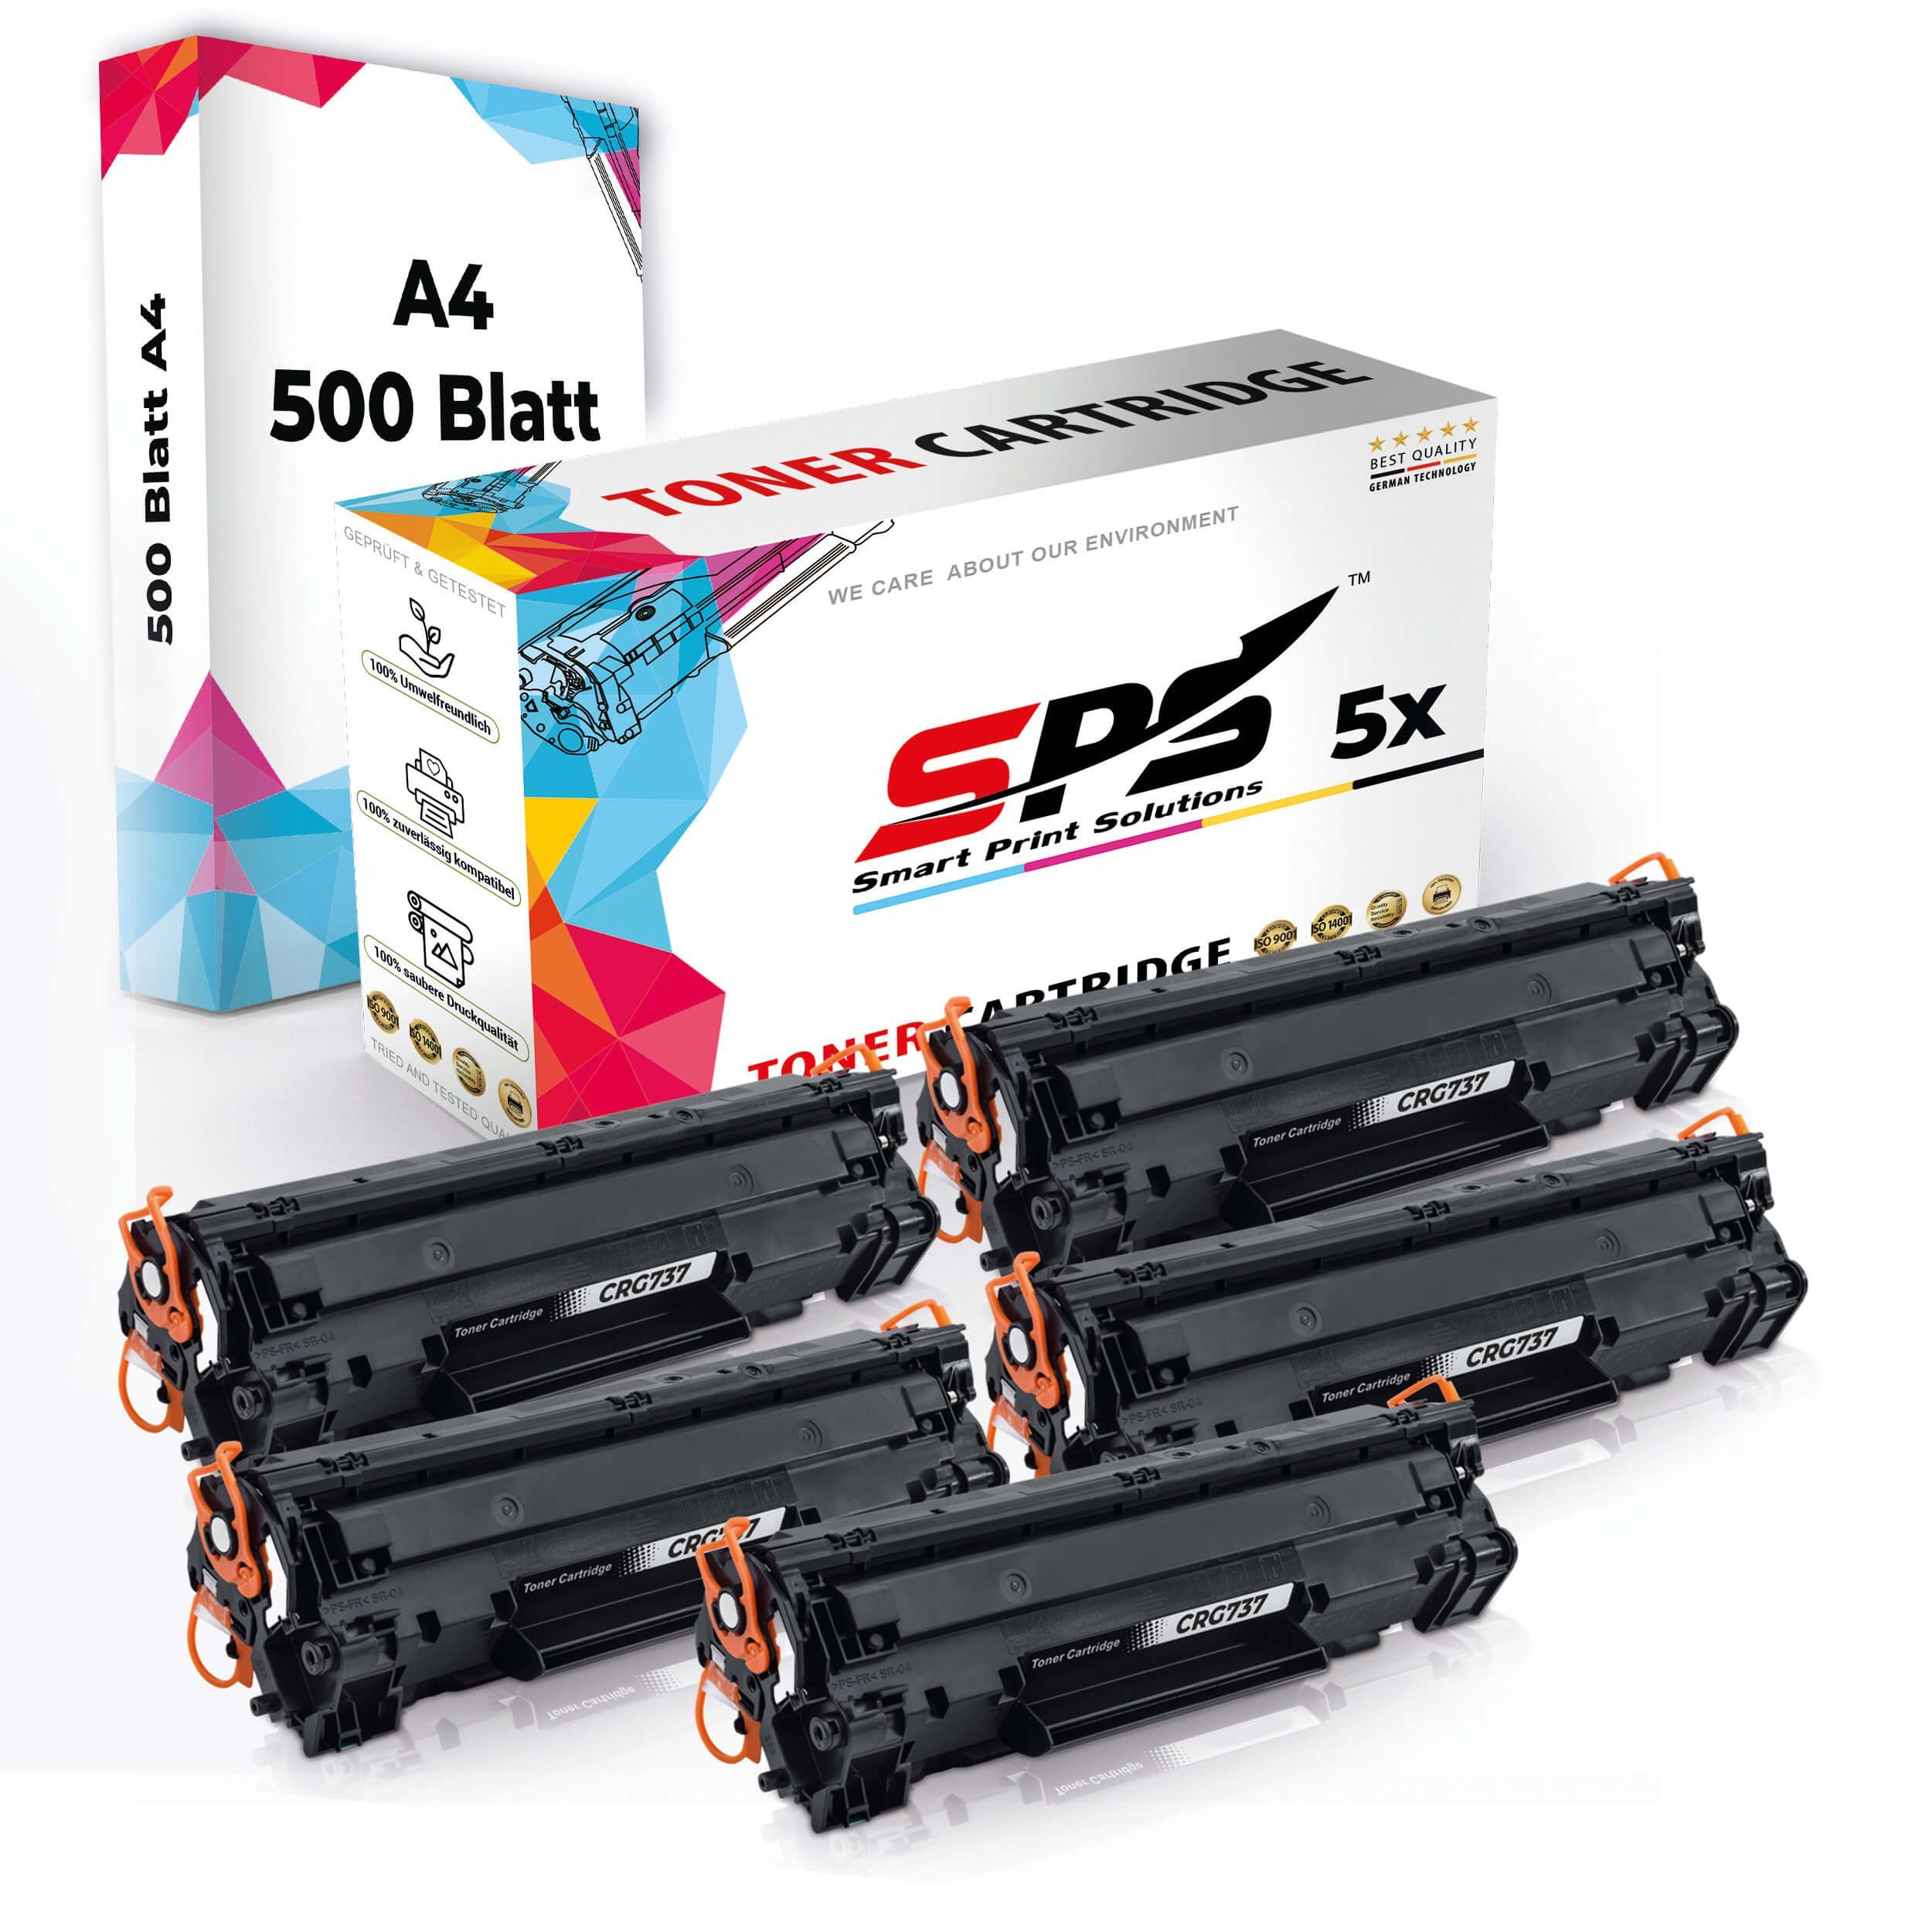 5x Toner,1x Druckerpapier SPS Set Kompatibel, 5x Pack, A4 Tonerkartusche Multipack + Druckerpapier) A4 (5er